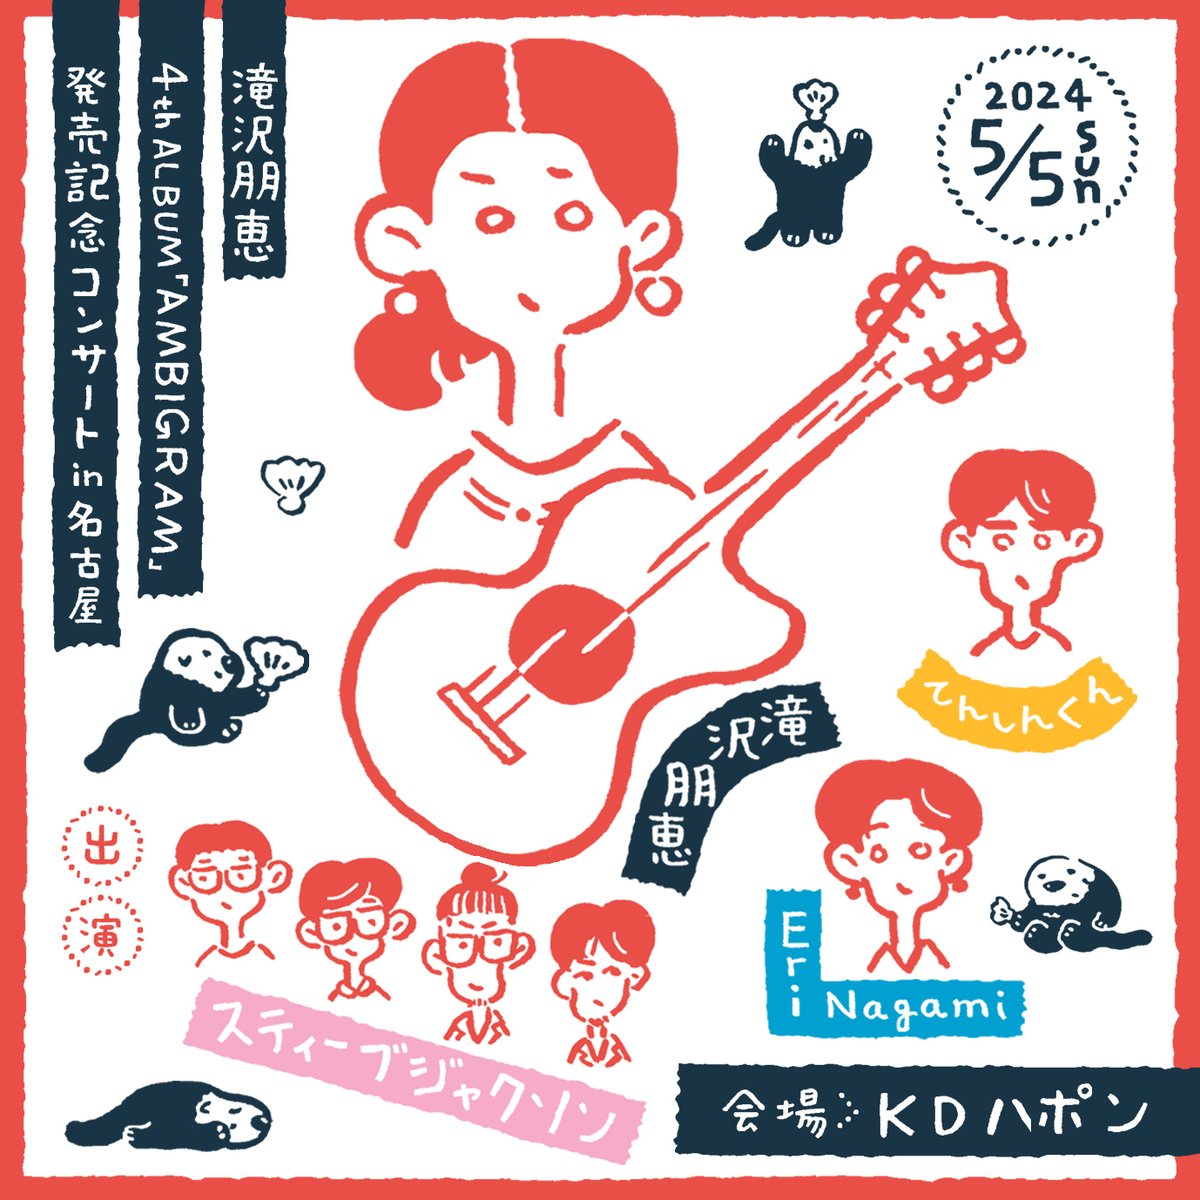 シンガーソングライター・滝沢朋恵の4thアルバムリリースを記念としたコンサートがKDハポンにて開催。共演にてんしんくん、 スティーブジャクソン 、Eri Nagami。 @LIVERARYMAG liverary-mag.com/music/109397.h…